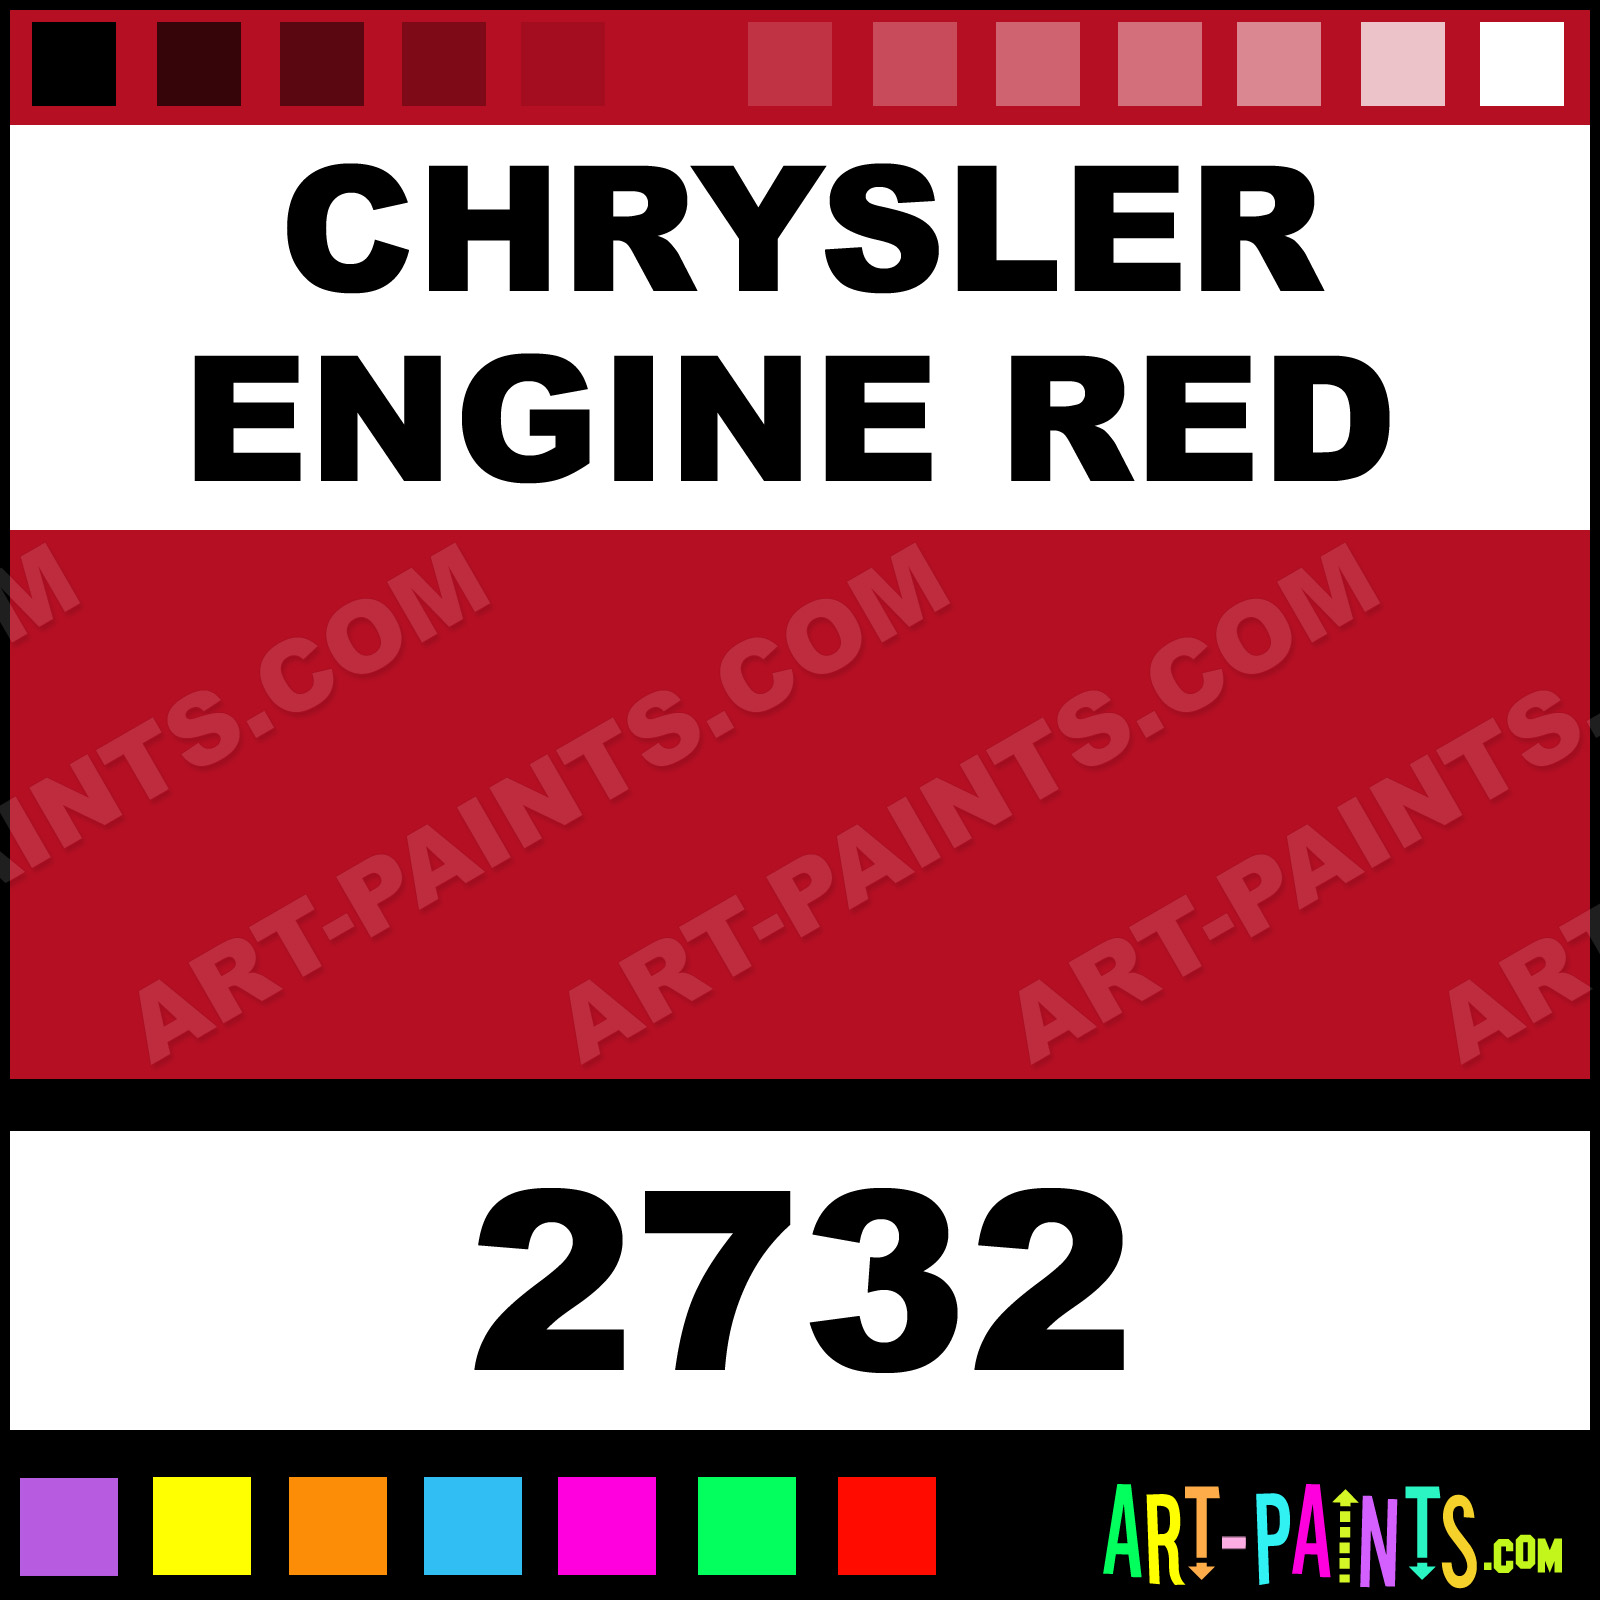 Chrysler Engine Red Model Acrylic Paints - 2732 - Chrysler Red Paint, Chrysler Engine Red Testors Model B50E22 Art-Paints.com